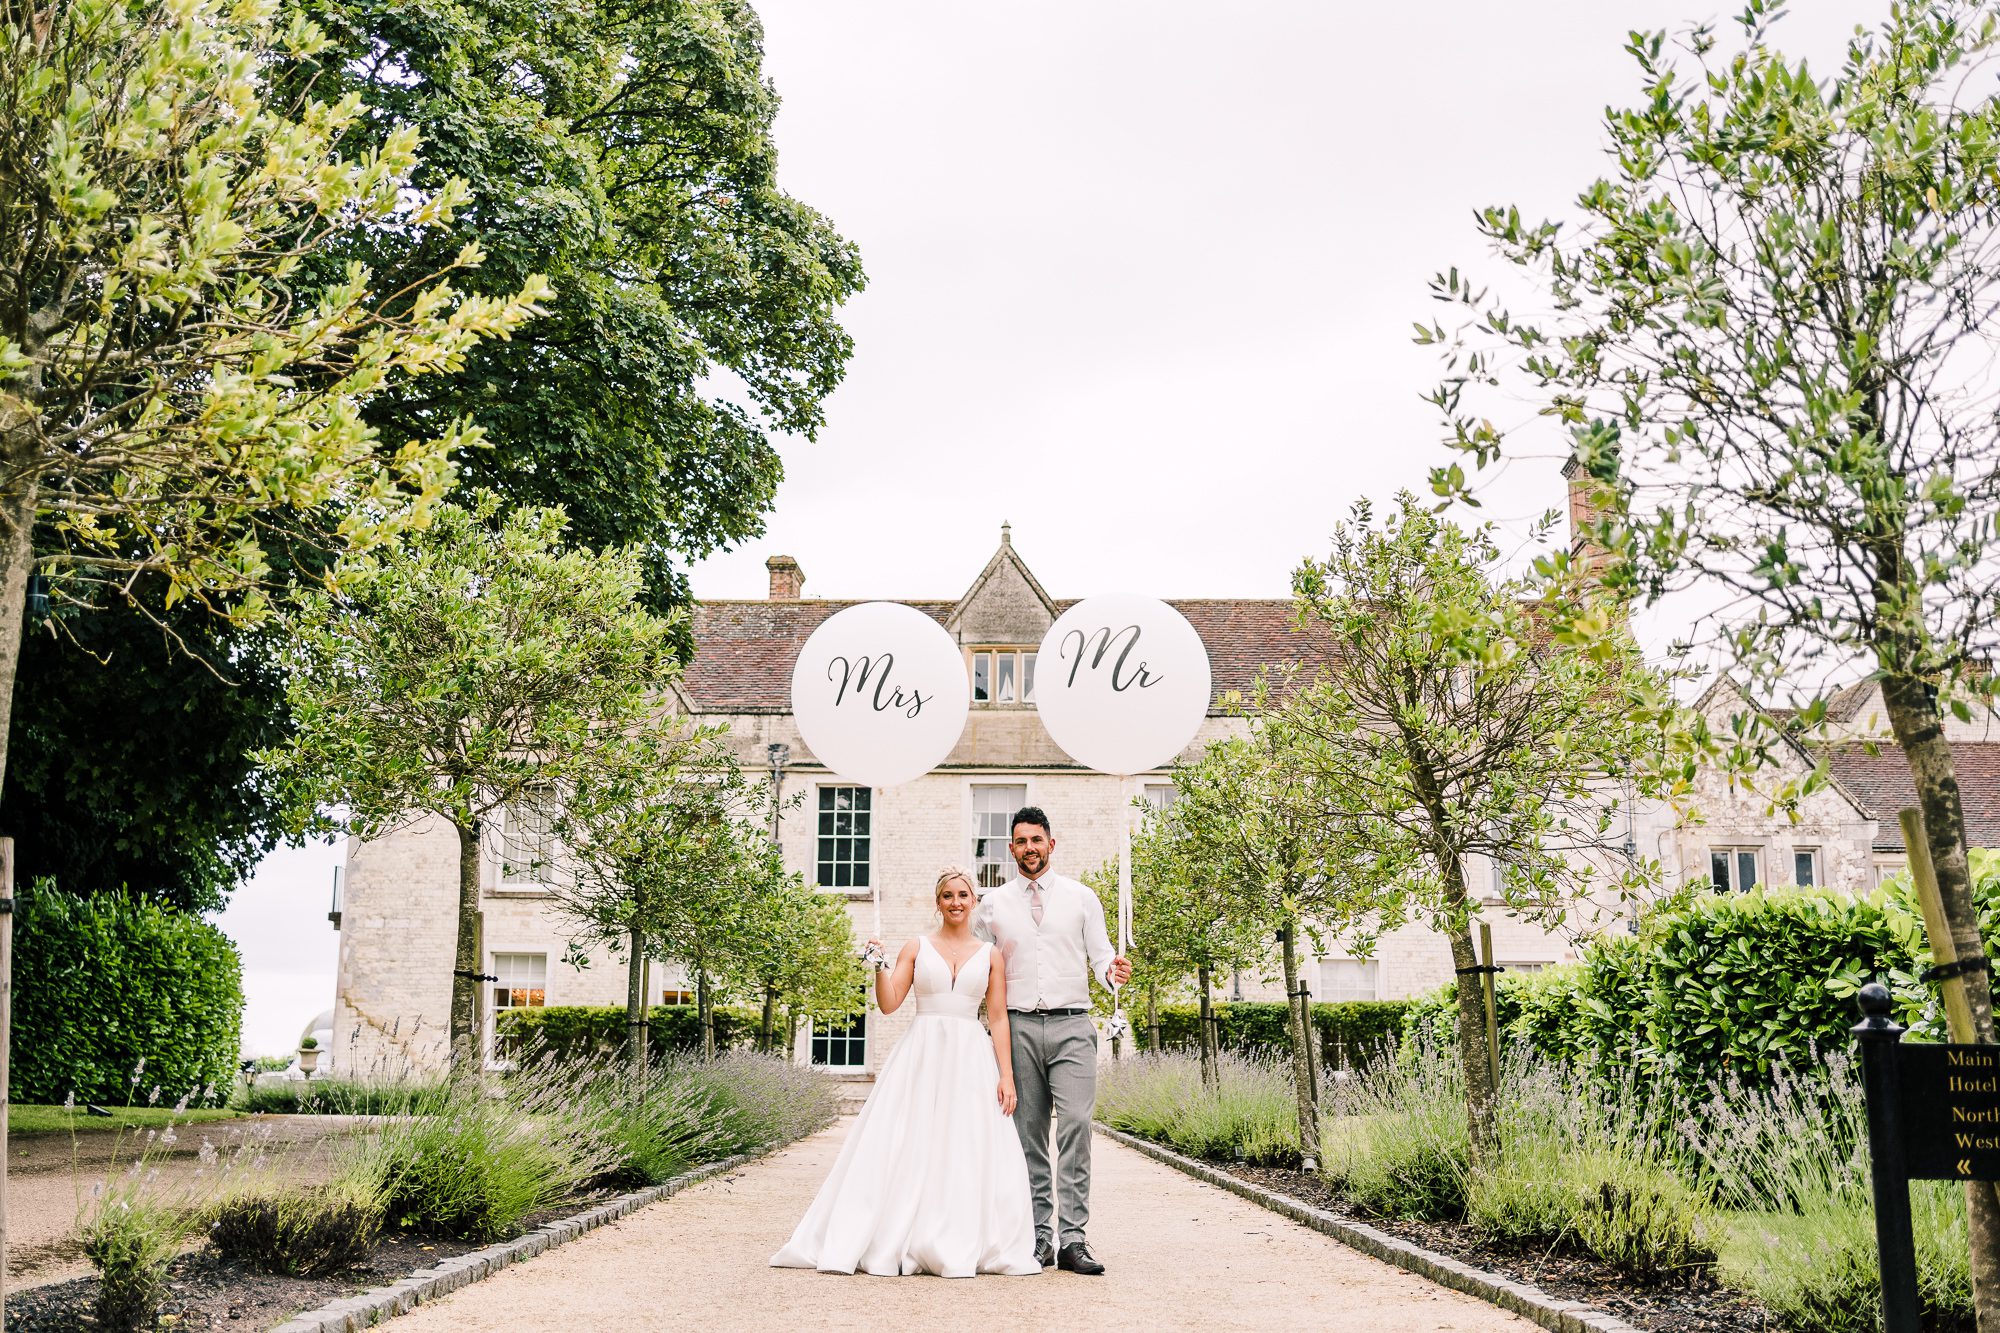 Surrey and Hampshire wedding photographers